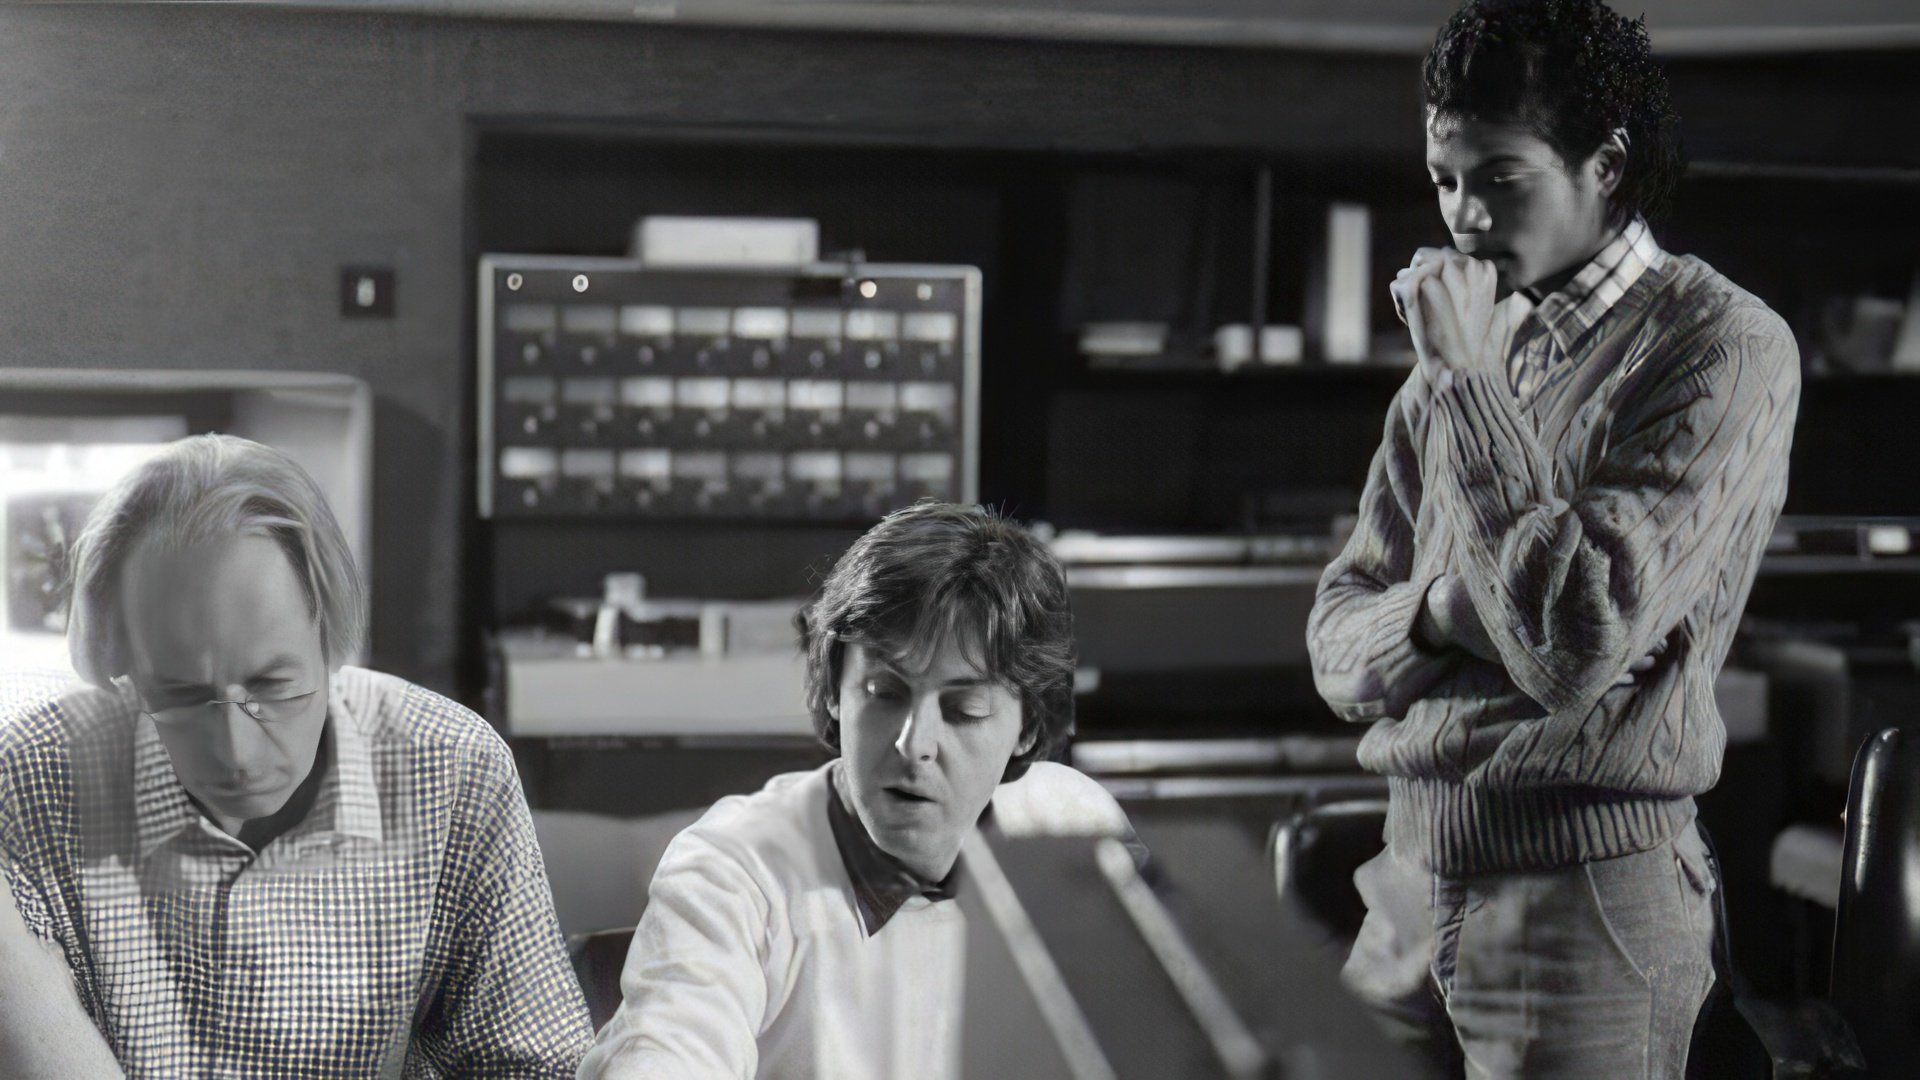 Michael Jackson and Paul McCartney working on Say Say Say